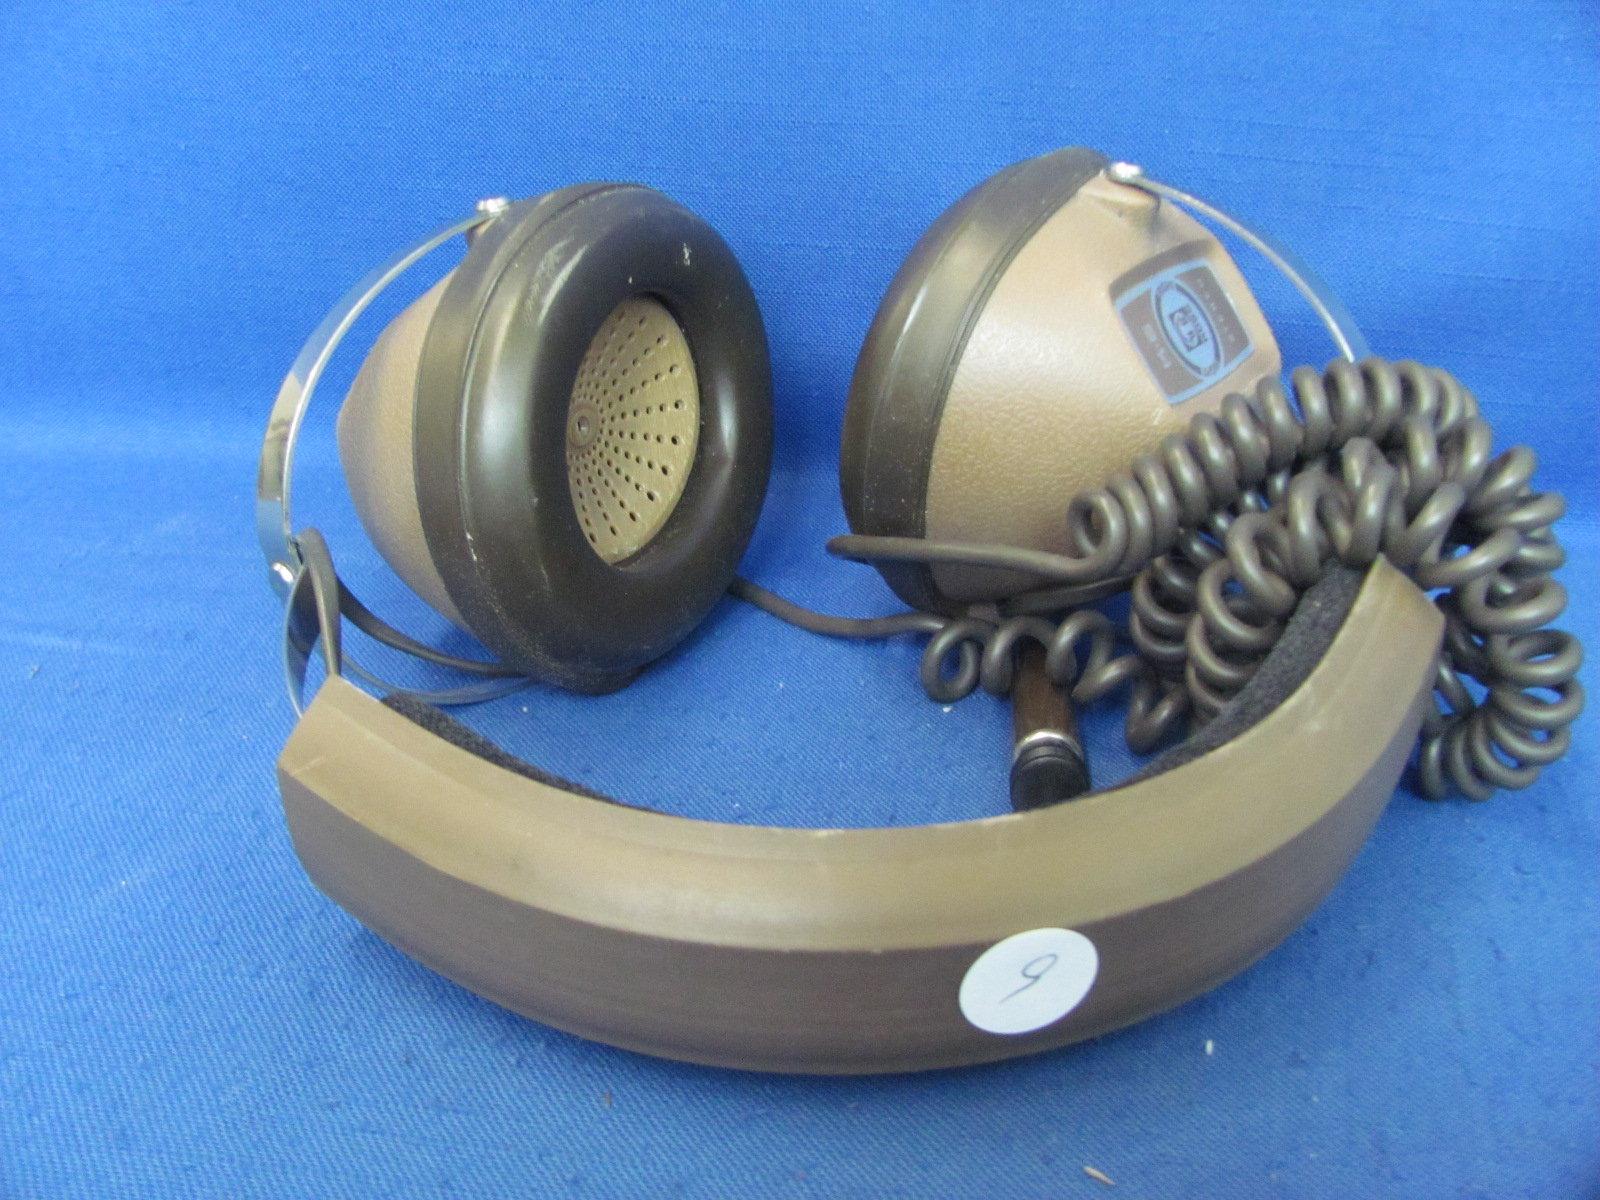 Radio Shack Koss K-6 Stereo Headphones – Not Tested – Light Wear